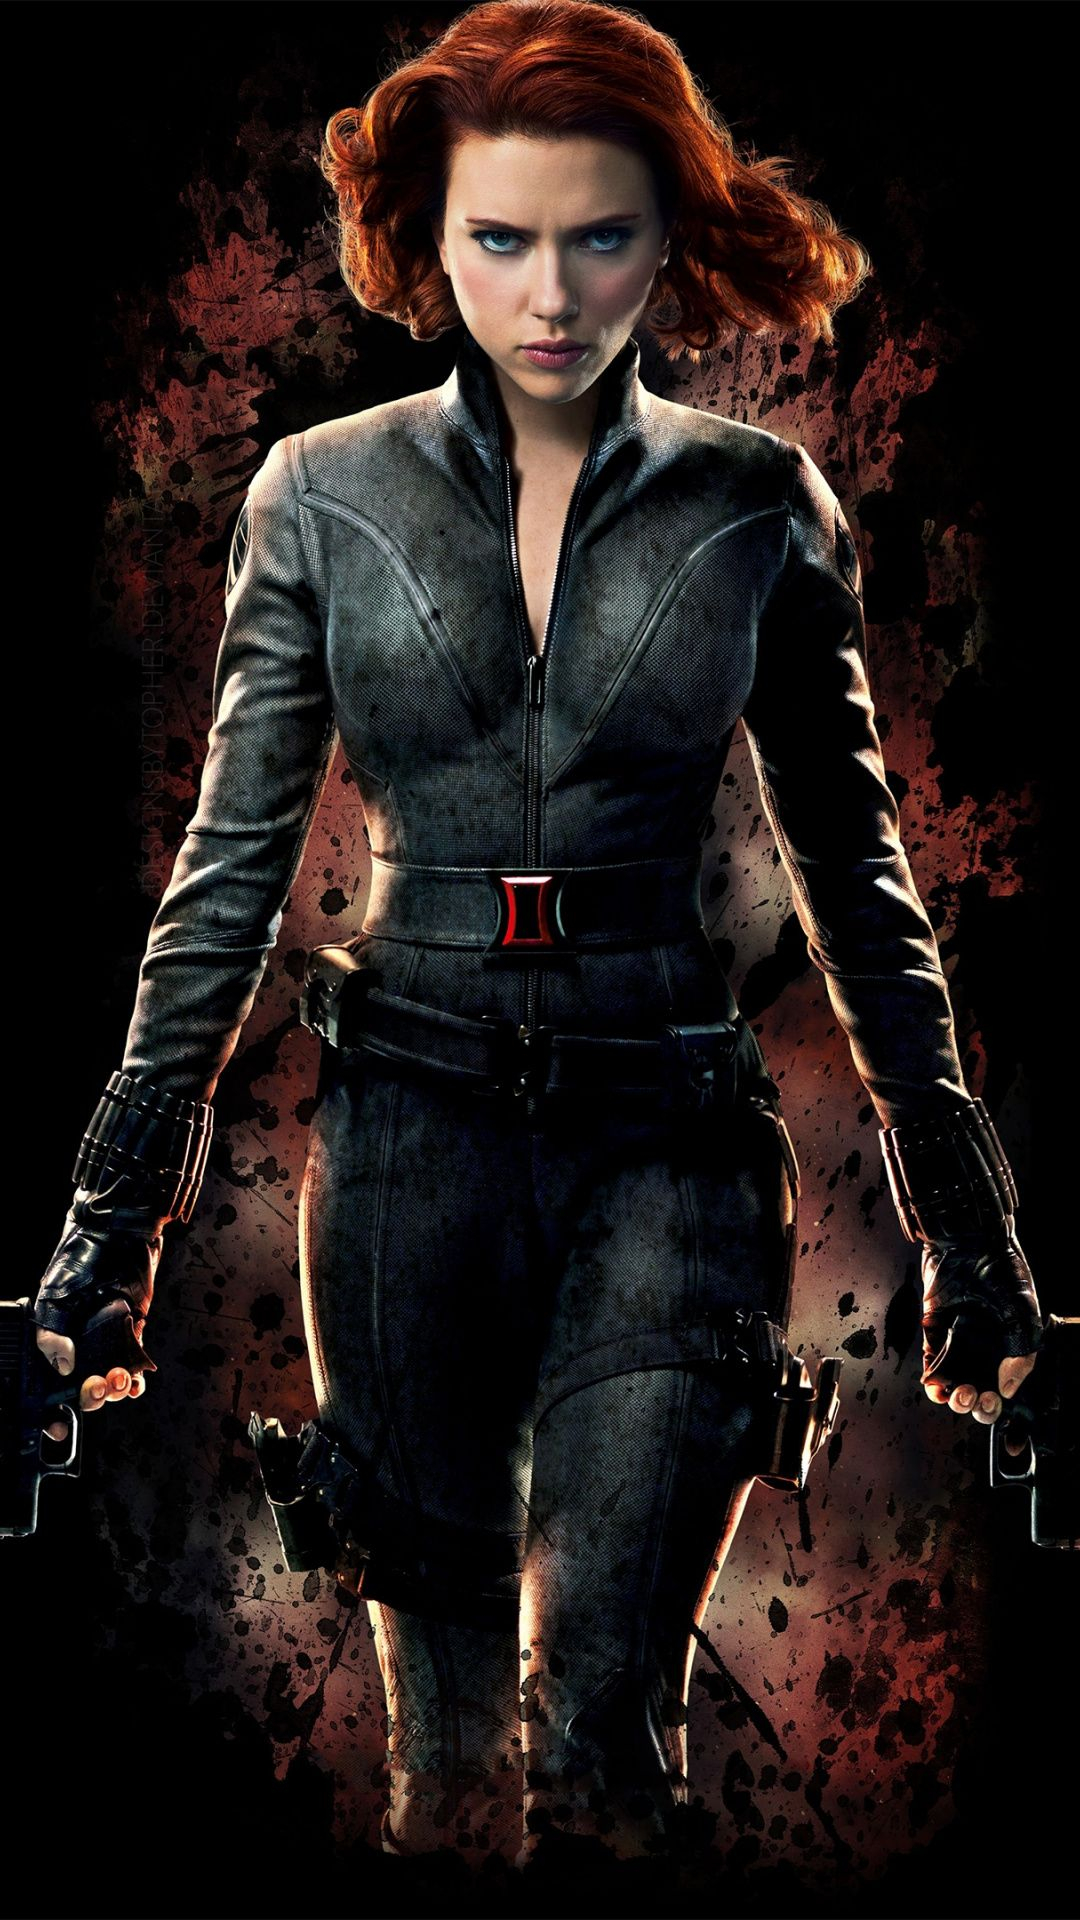 1080x1920 Black Widow, avengers, Scarlett Johansson, minimal Wallpaper | Black widow marvel, Black widow avengers, Black widow scarlett